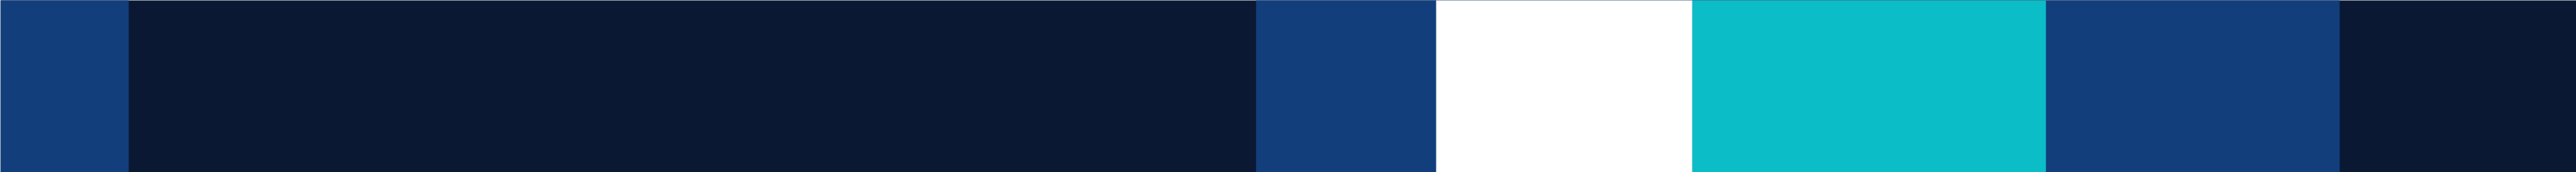 Decorative dark blue banner